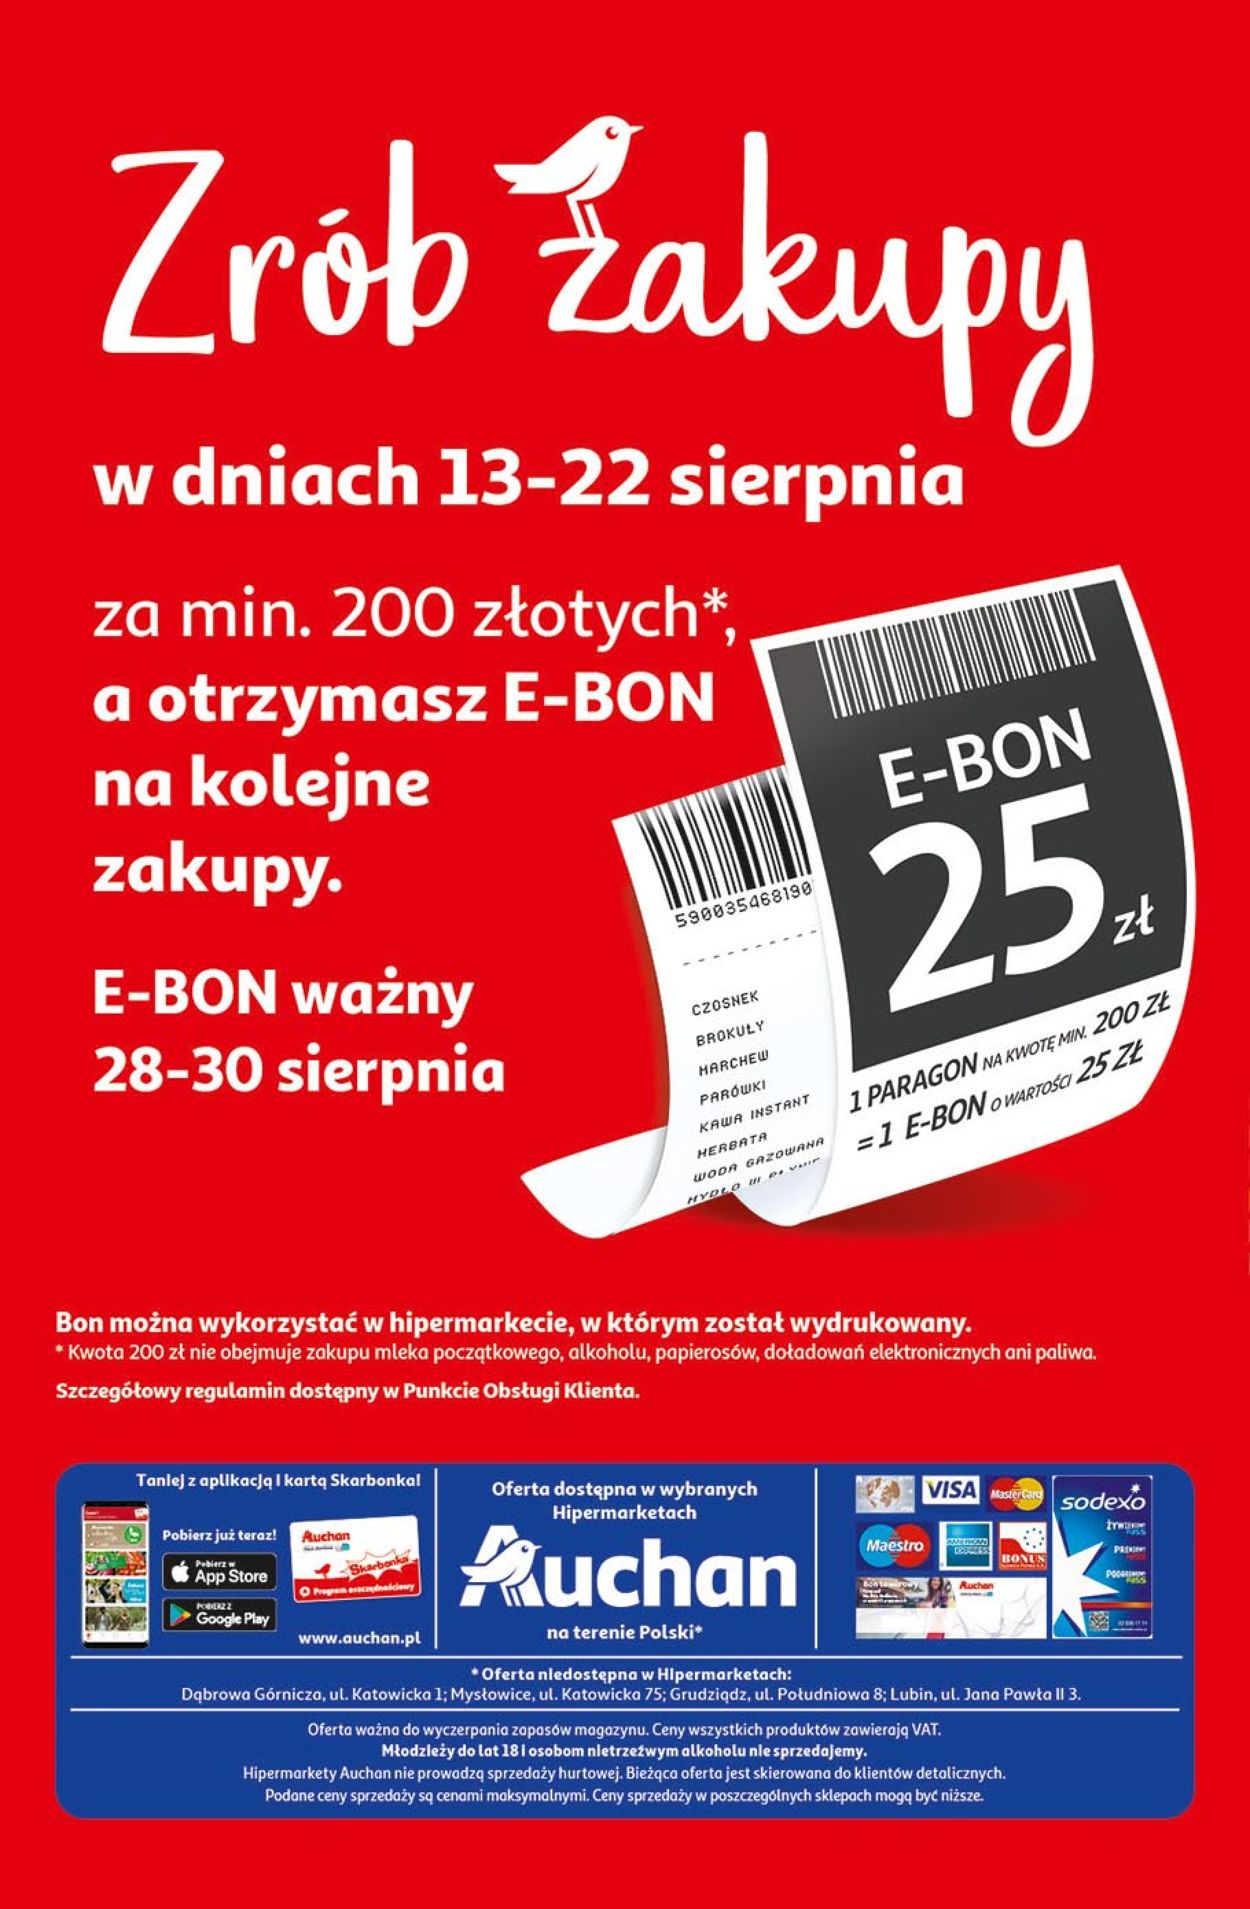 Auchan Gazetka od 13.08.2020